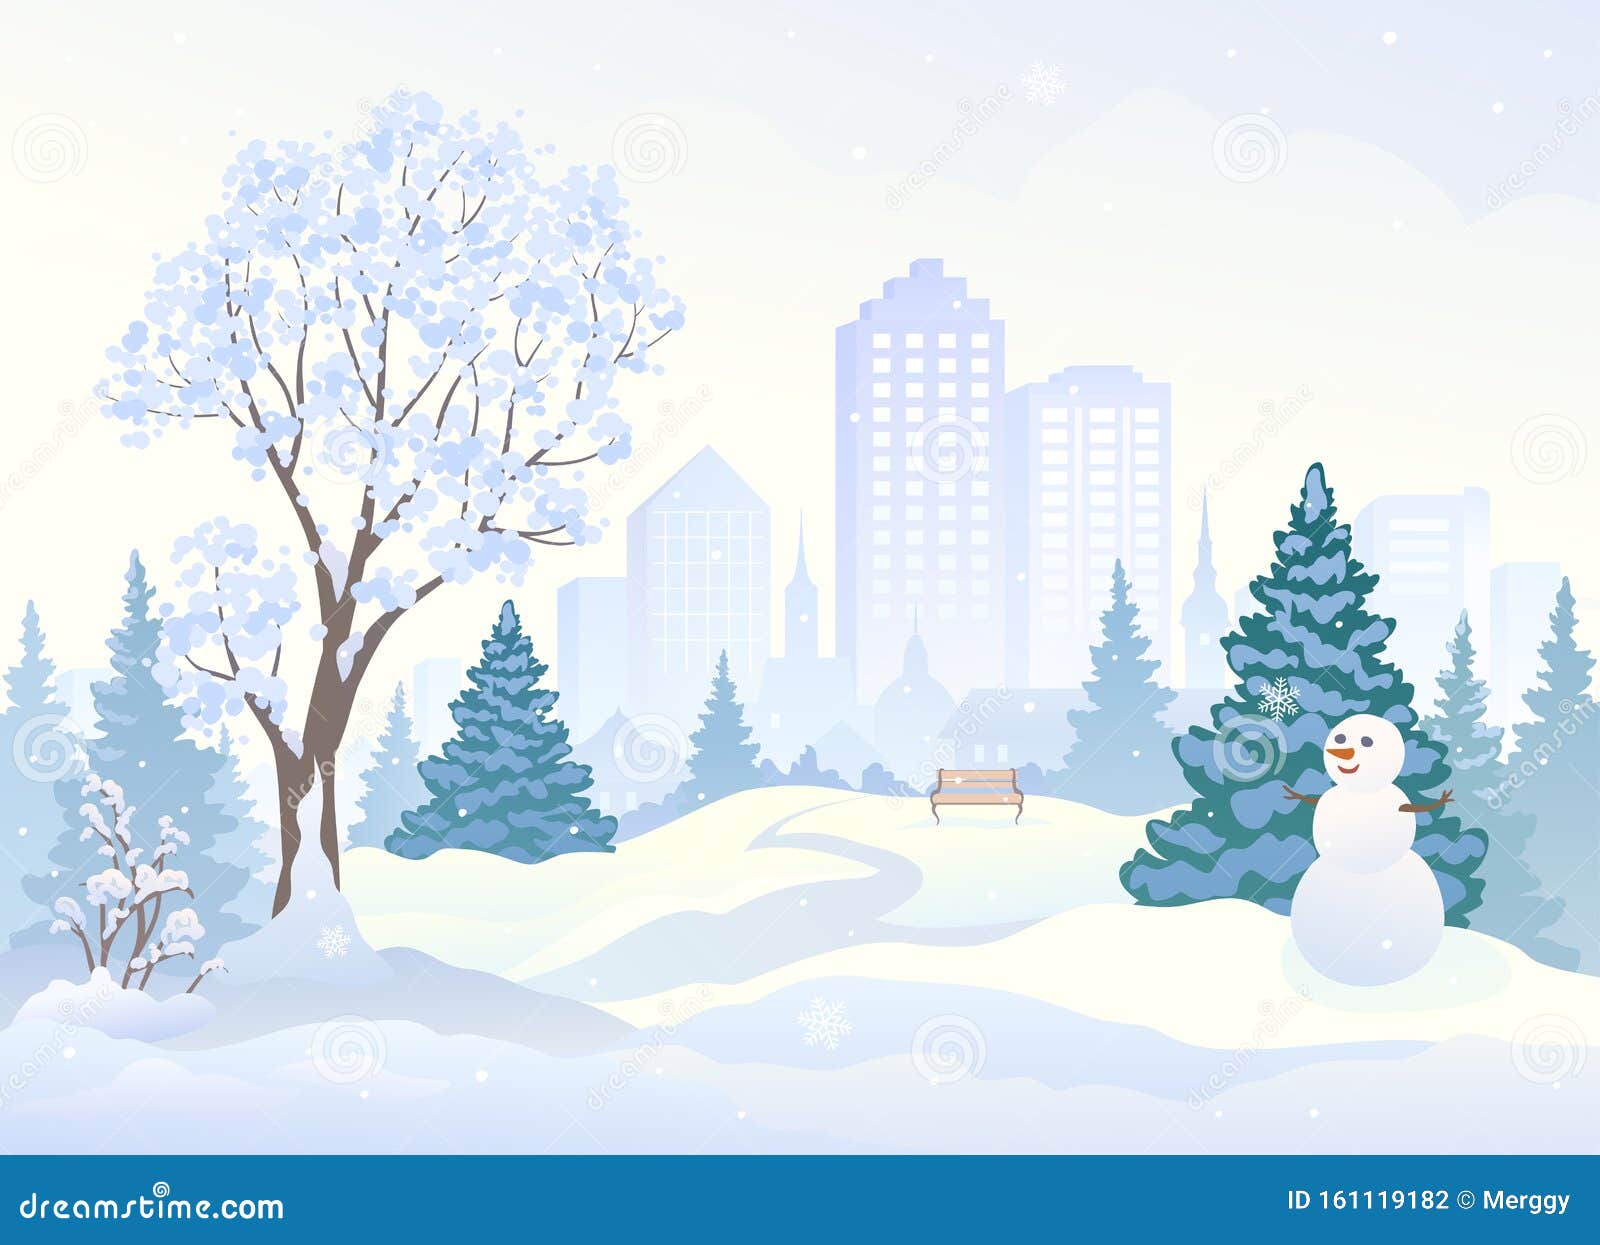 雪地公园 有个可爱的雪人向量例证 插画包括有雪地公园 有个可爱的雪人